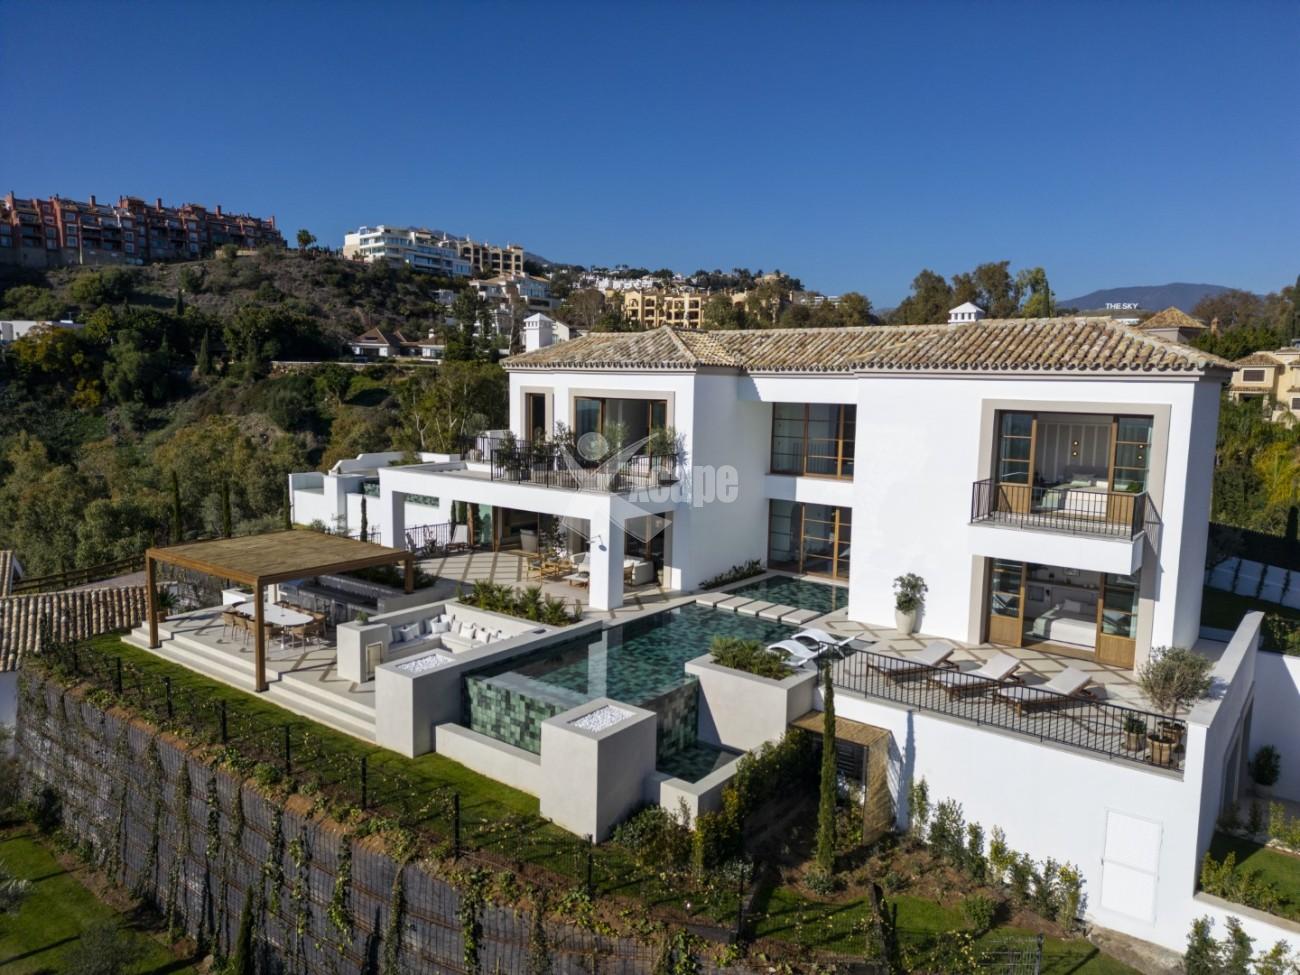 Luxury Spanish Villa Benahavis Spain (4)